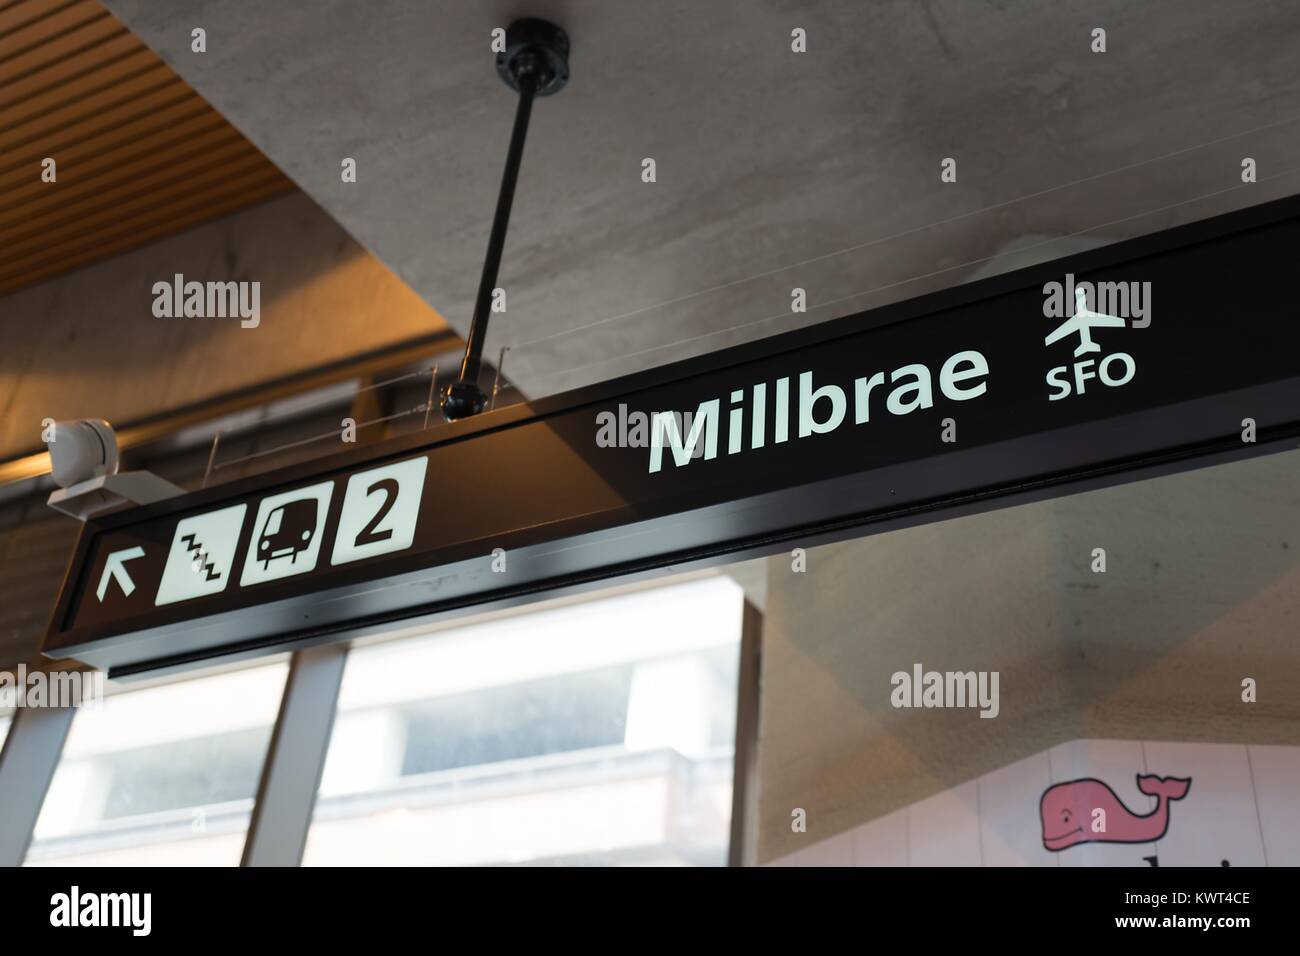 Segnaletica per la linea di Millbrae della Bay Area Rapid Transit (BART), sistema che serve l'Aeroporto Internazionale di San Francisco (SFO), al Walnut Creek, California stazione BART, 13 settembre 2017. Foto Stock